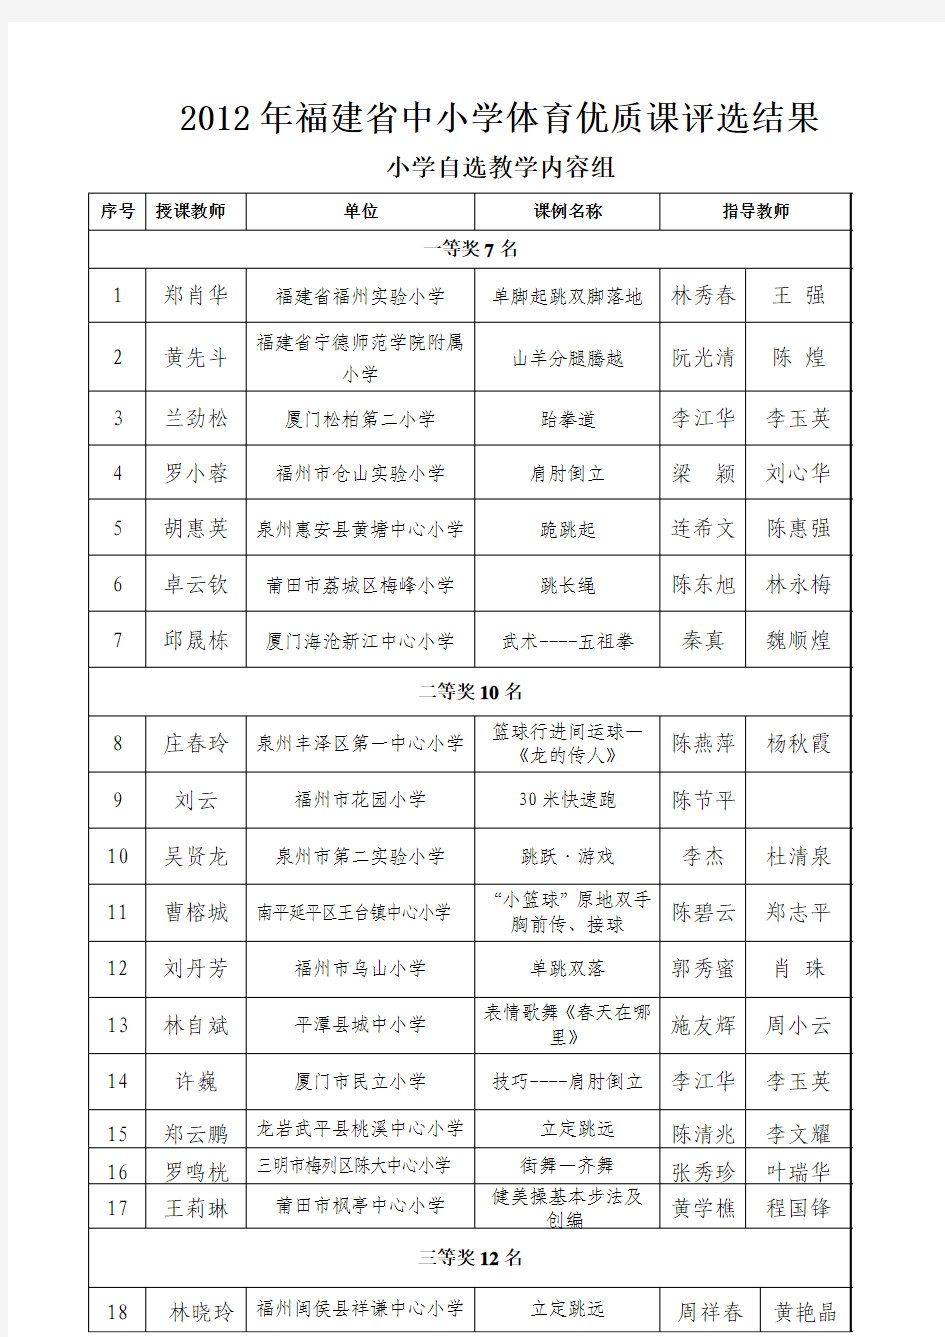 2012年福建省中小学体育优质课评选结果